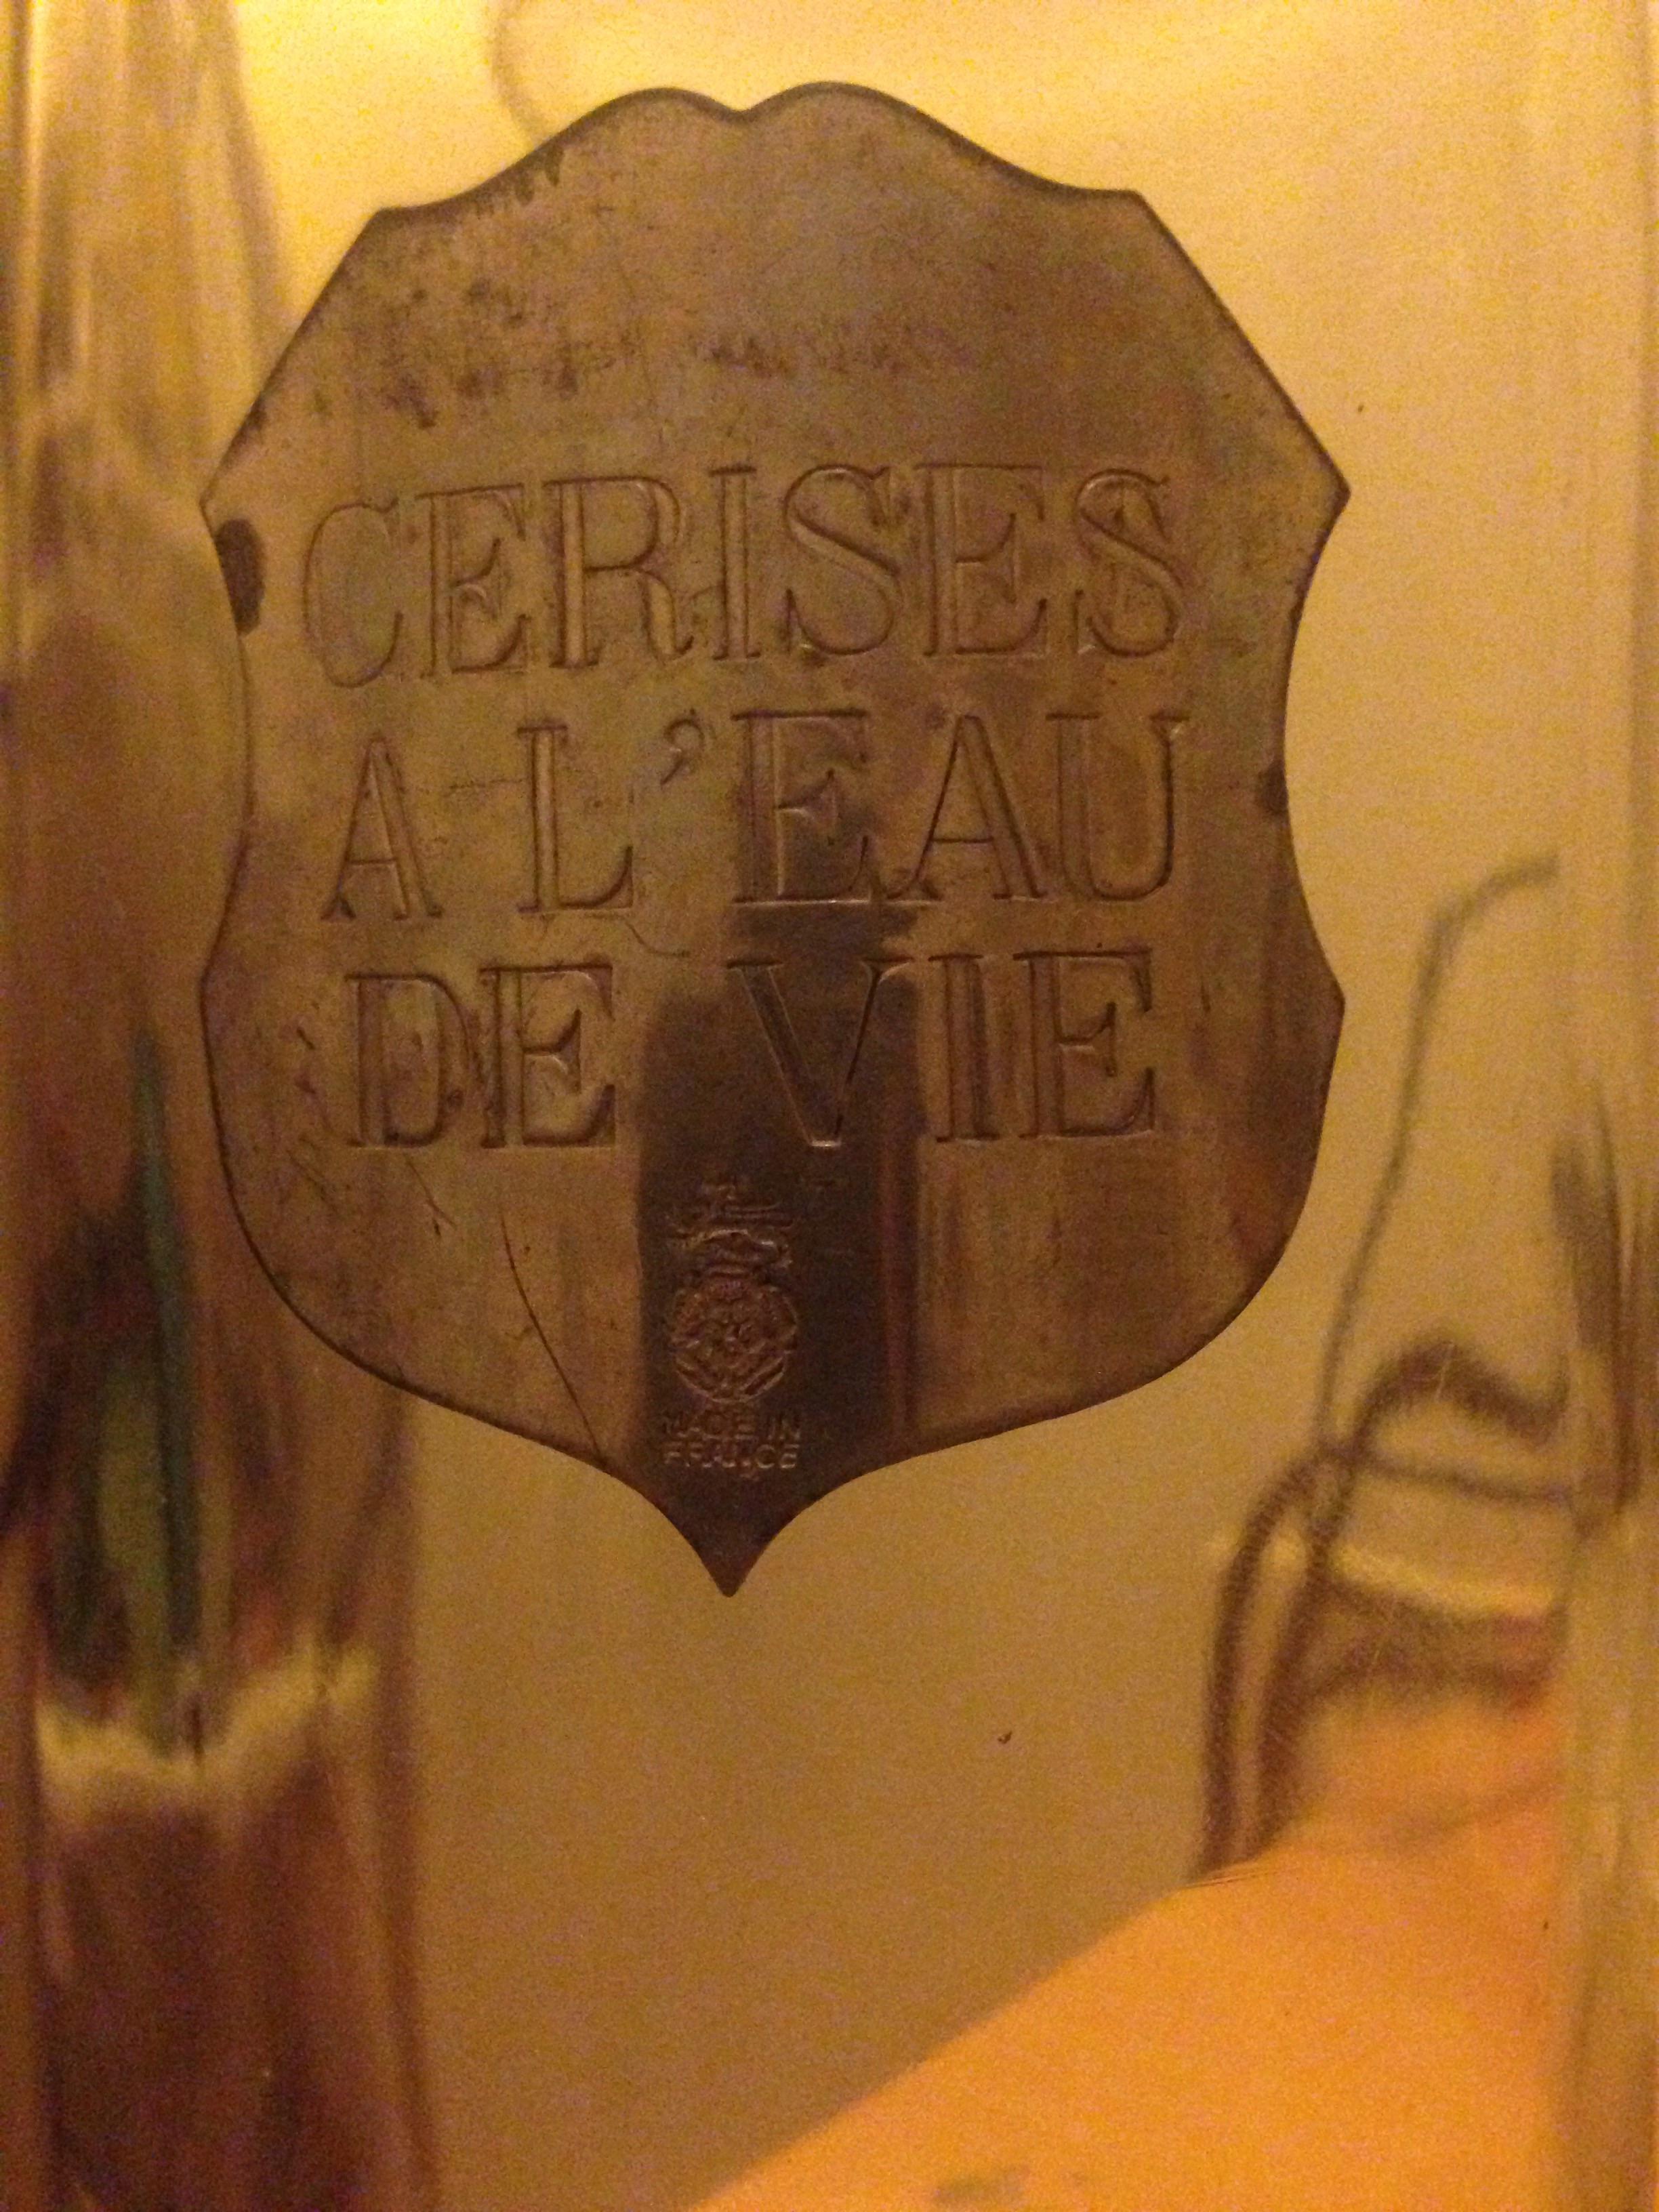 troc de troc flacon vintage avec etiquette en étain made in france image 1